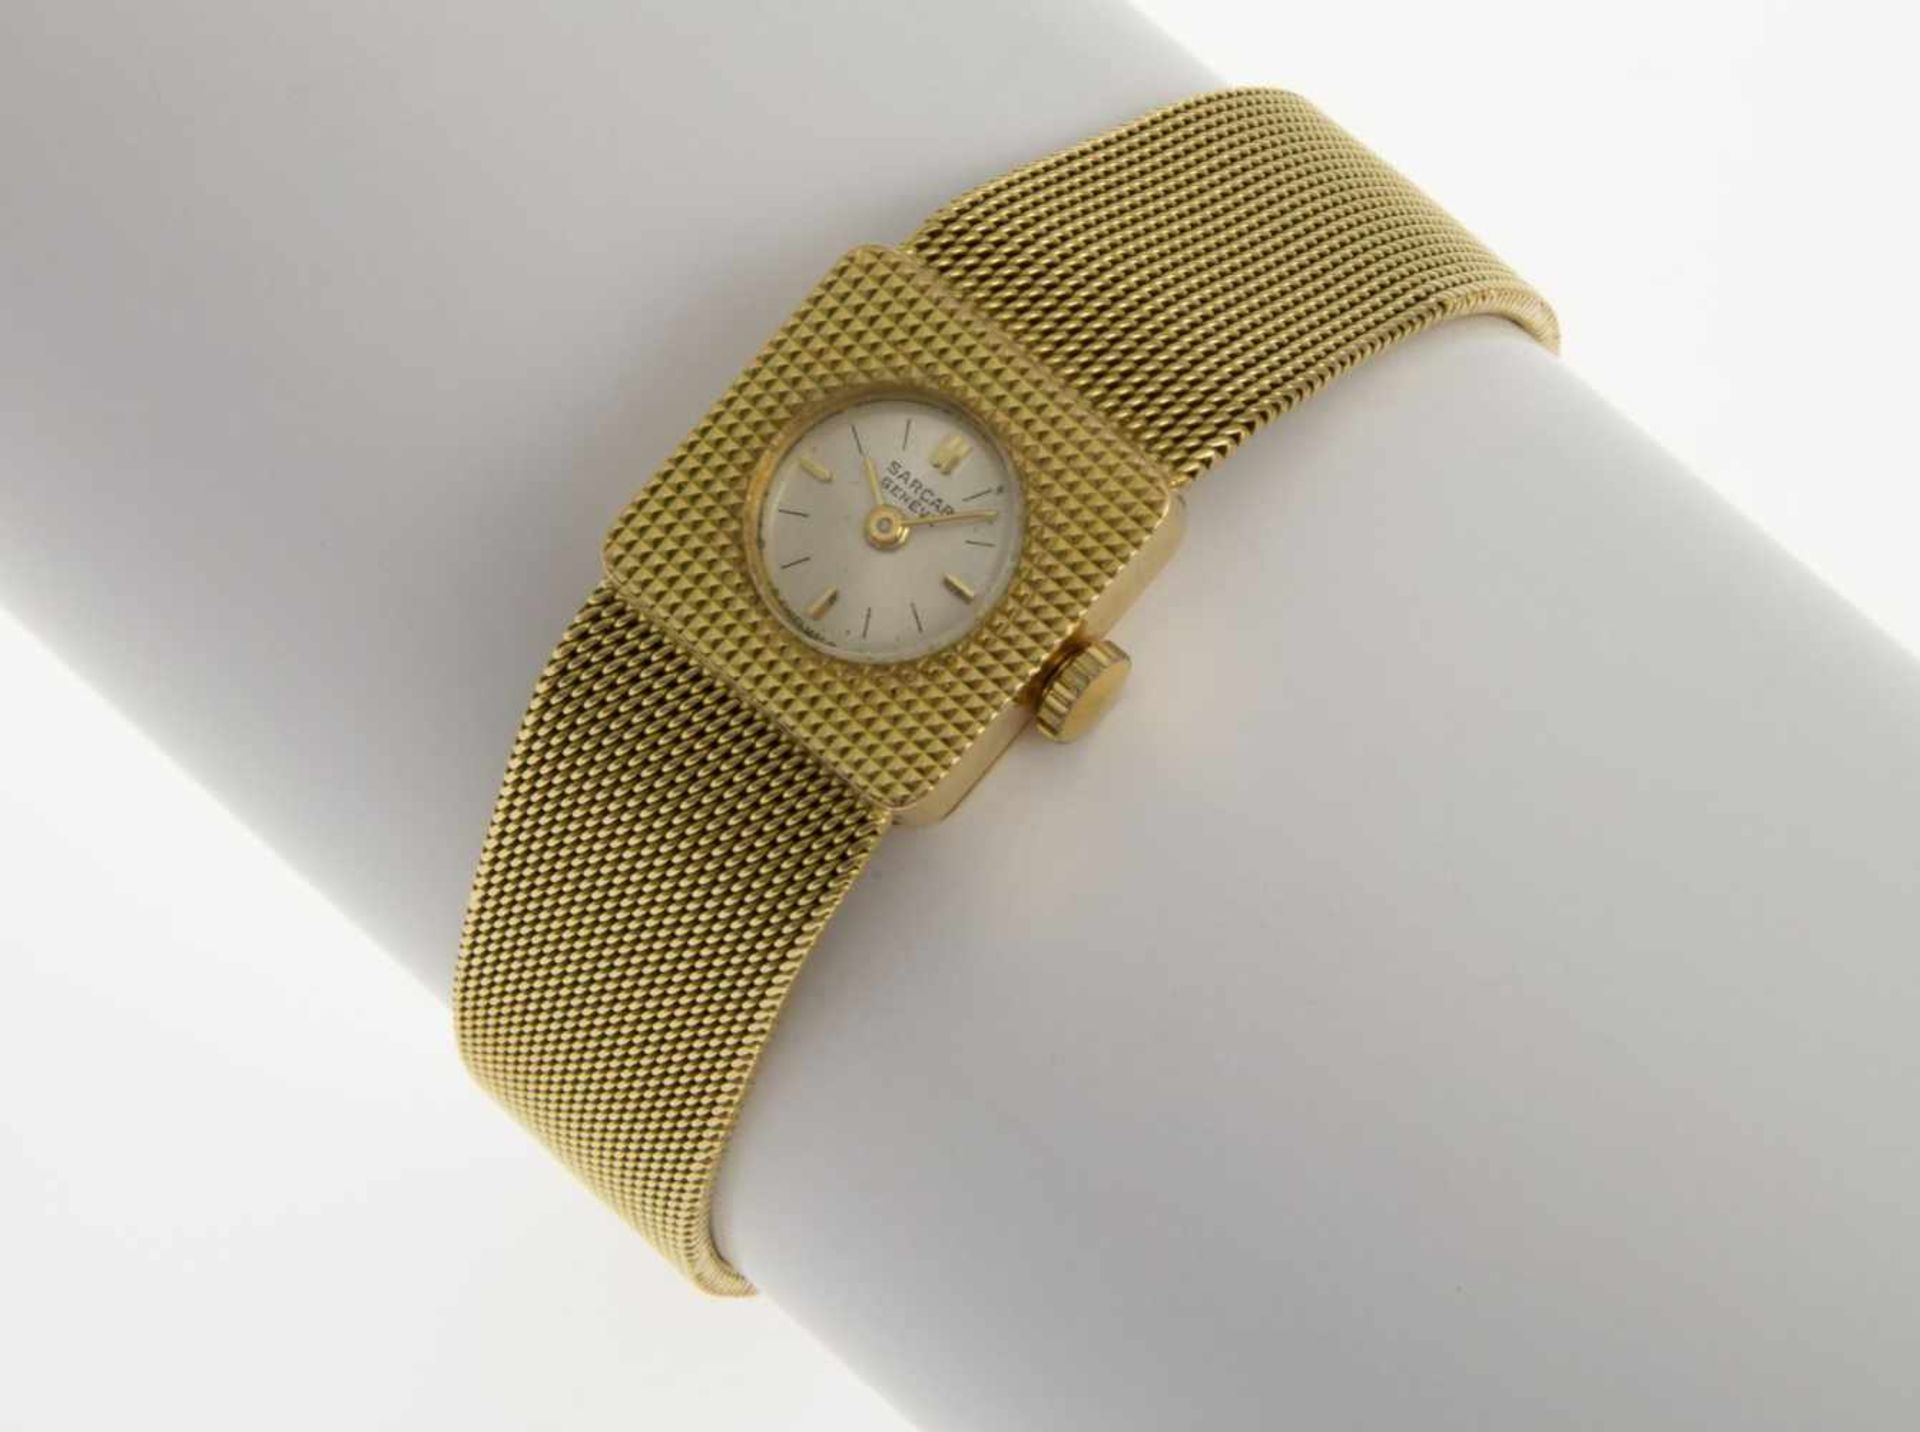 Sarcar-DamenarmbanduhrGehäuse und Armband aus Gelbgold 750. Versilbertes Zifferblatt mit